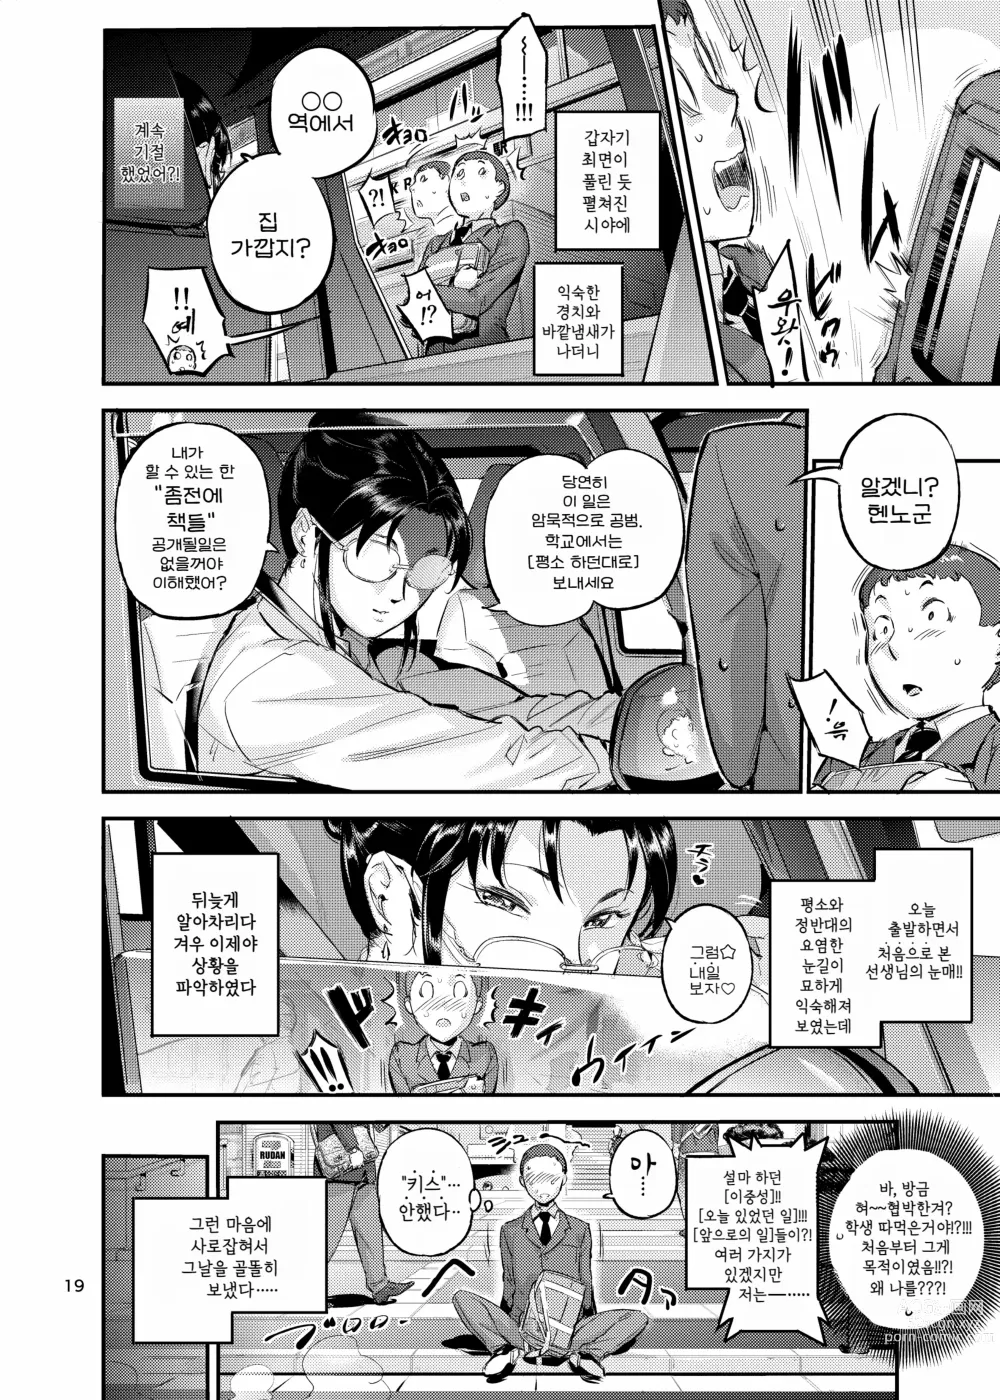 Page 19 of doujinshi 생활지도의 마츠노하는 노려본 학생을 잡아먹고 있다